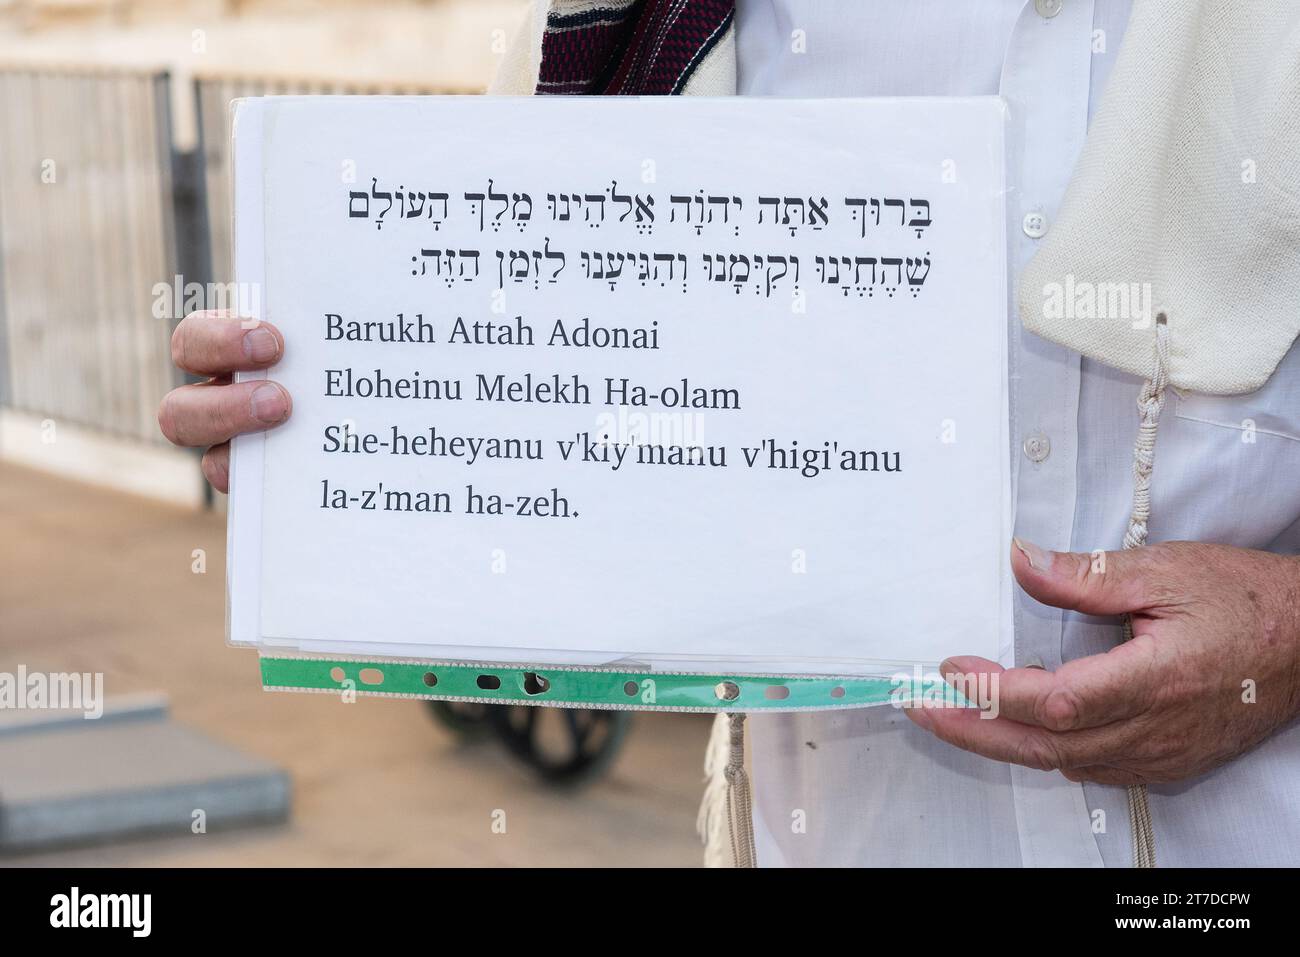 Traslitterazione e allargamento della benedizione ebraica Shehecheyanu, una preghiera di gratitudine, recitata dagli ebrei in occasioni speciali. Foto Stock